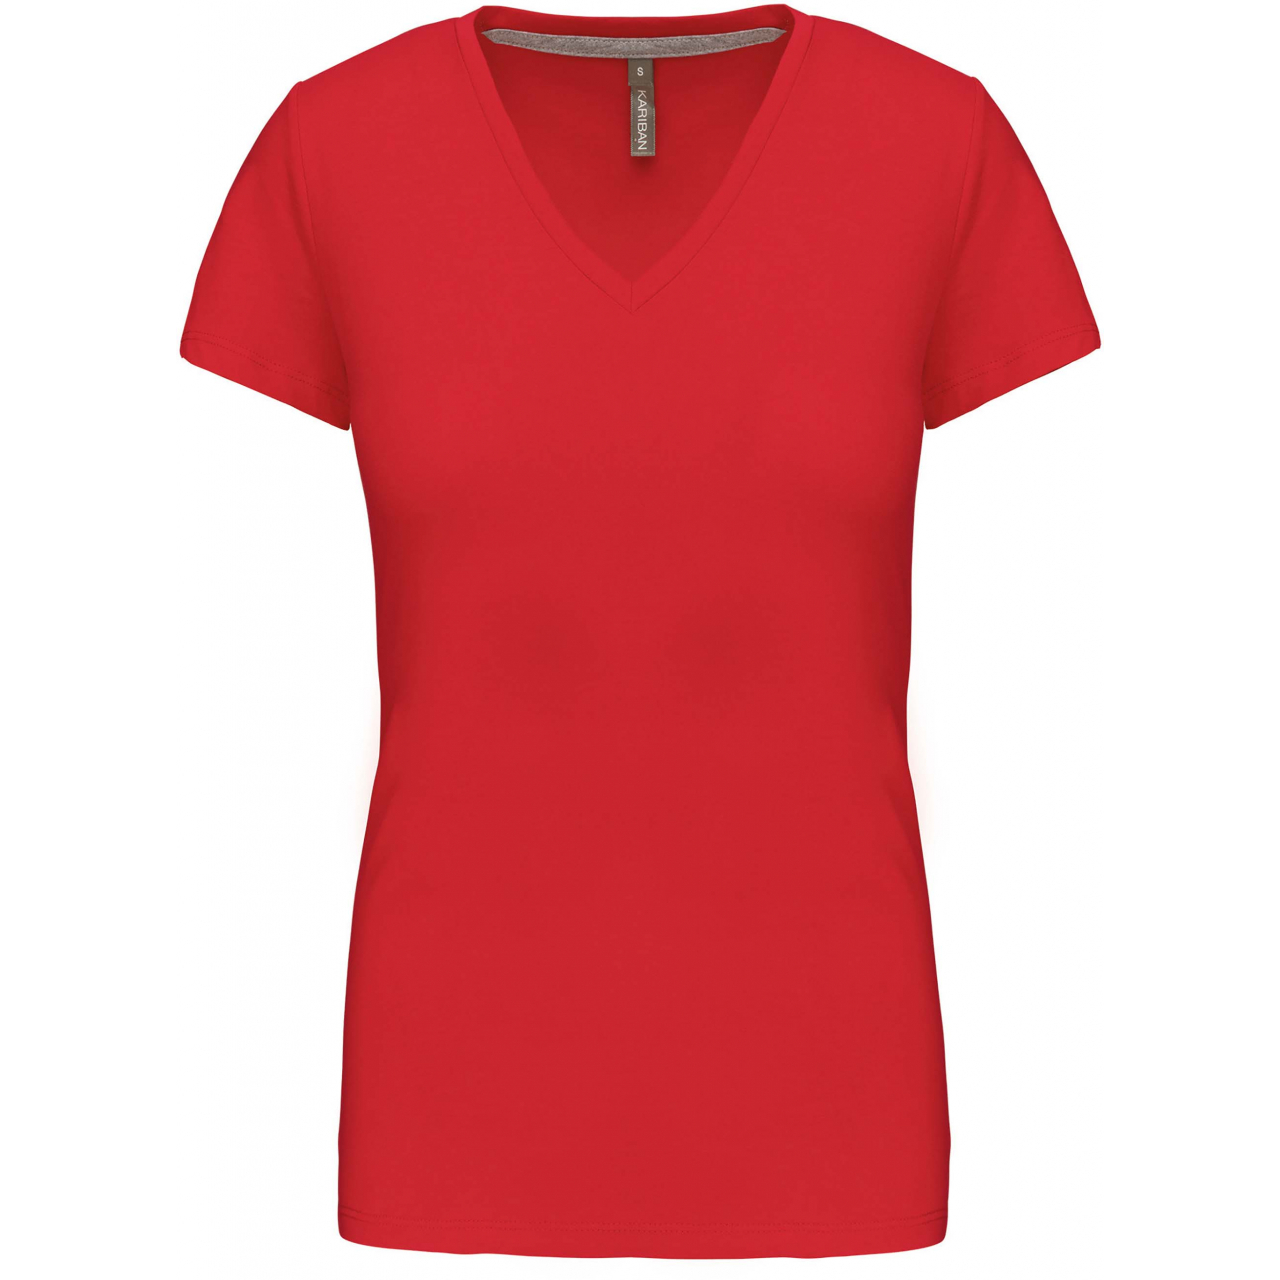 Dámské tričko Kariban V-neck s krátkým rukávem - červené, XL